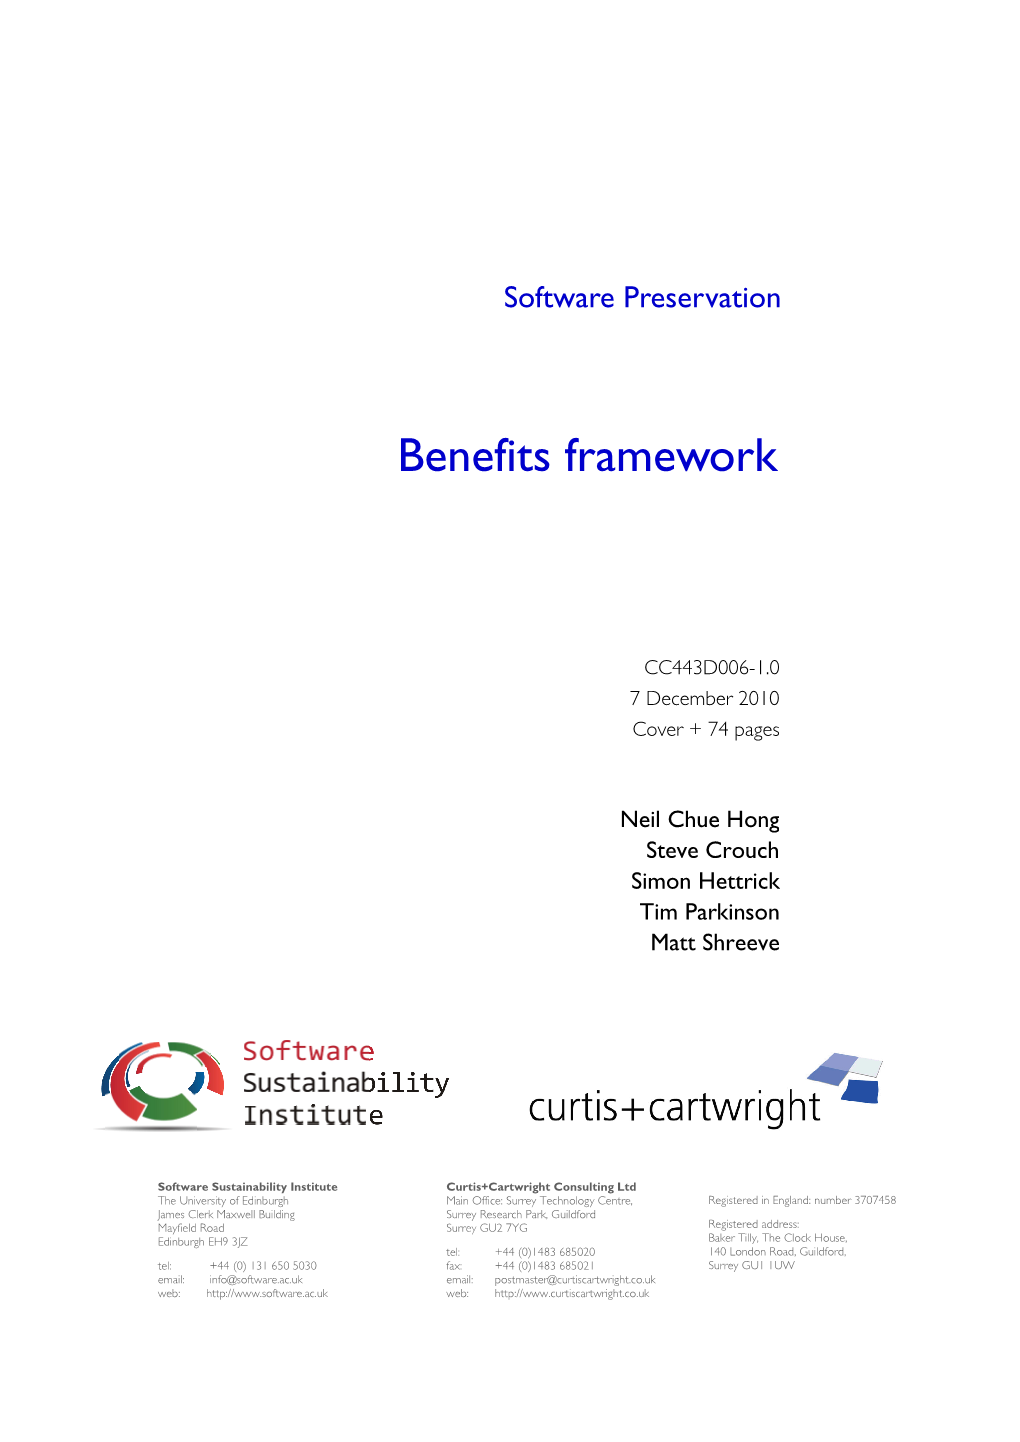 Software Preservation Benefits Framework